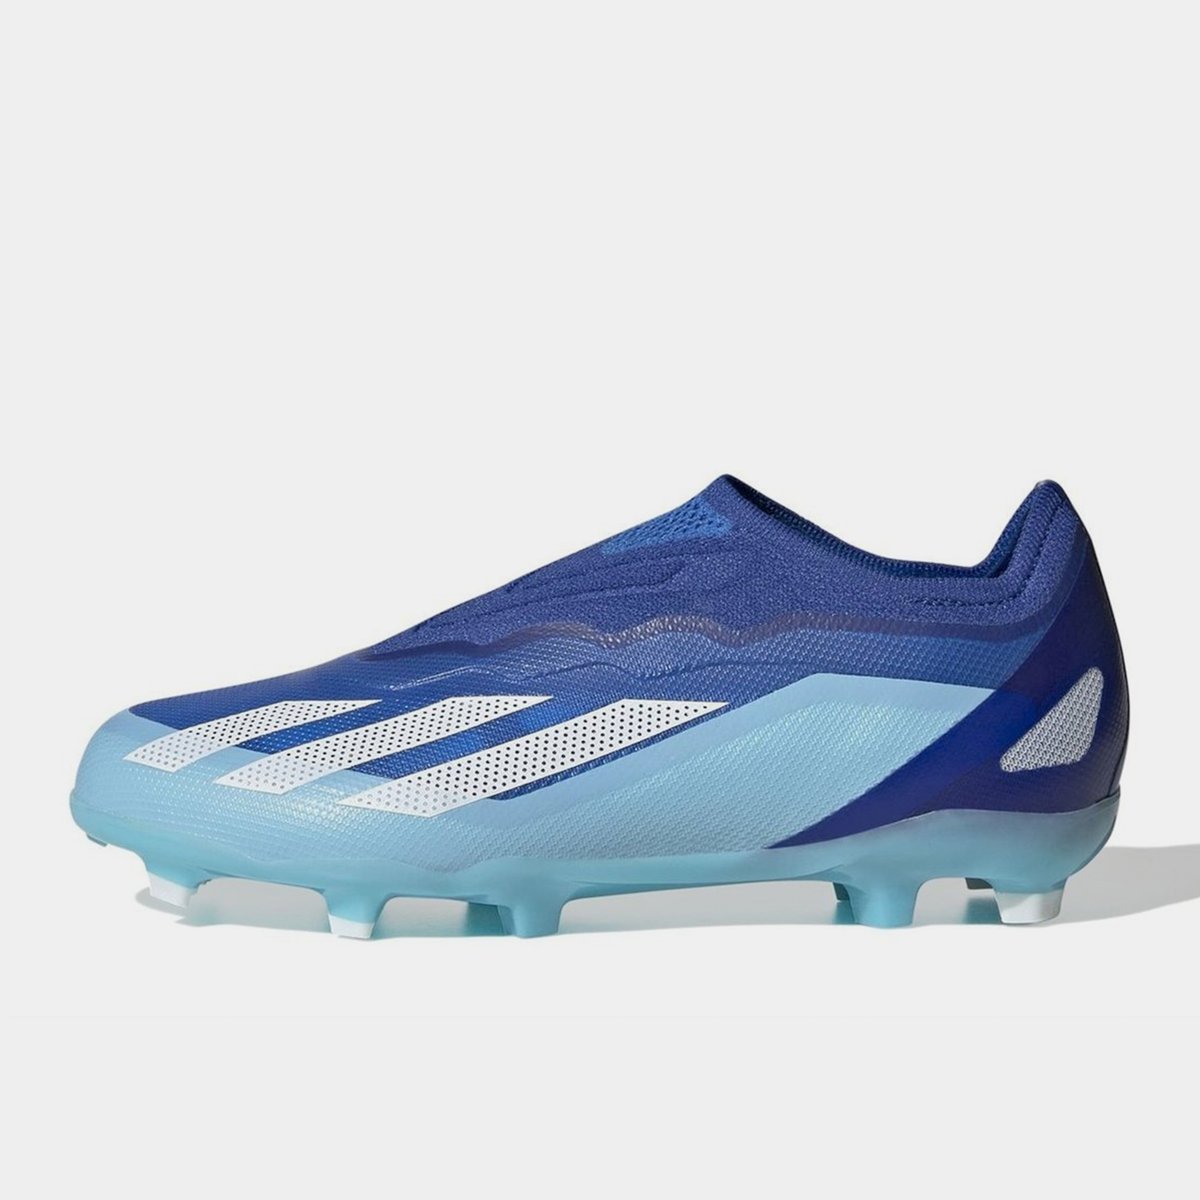 adidas Football Boots